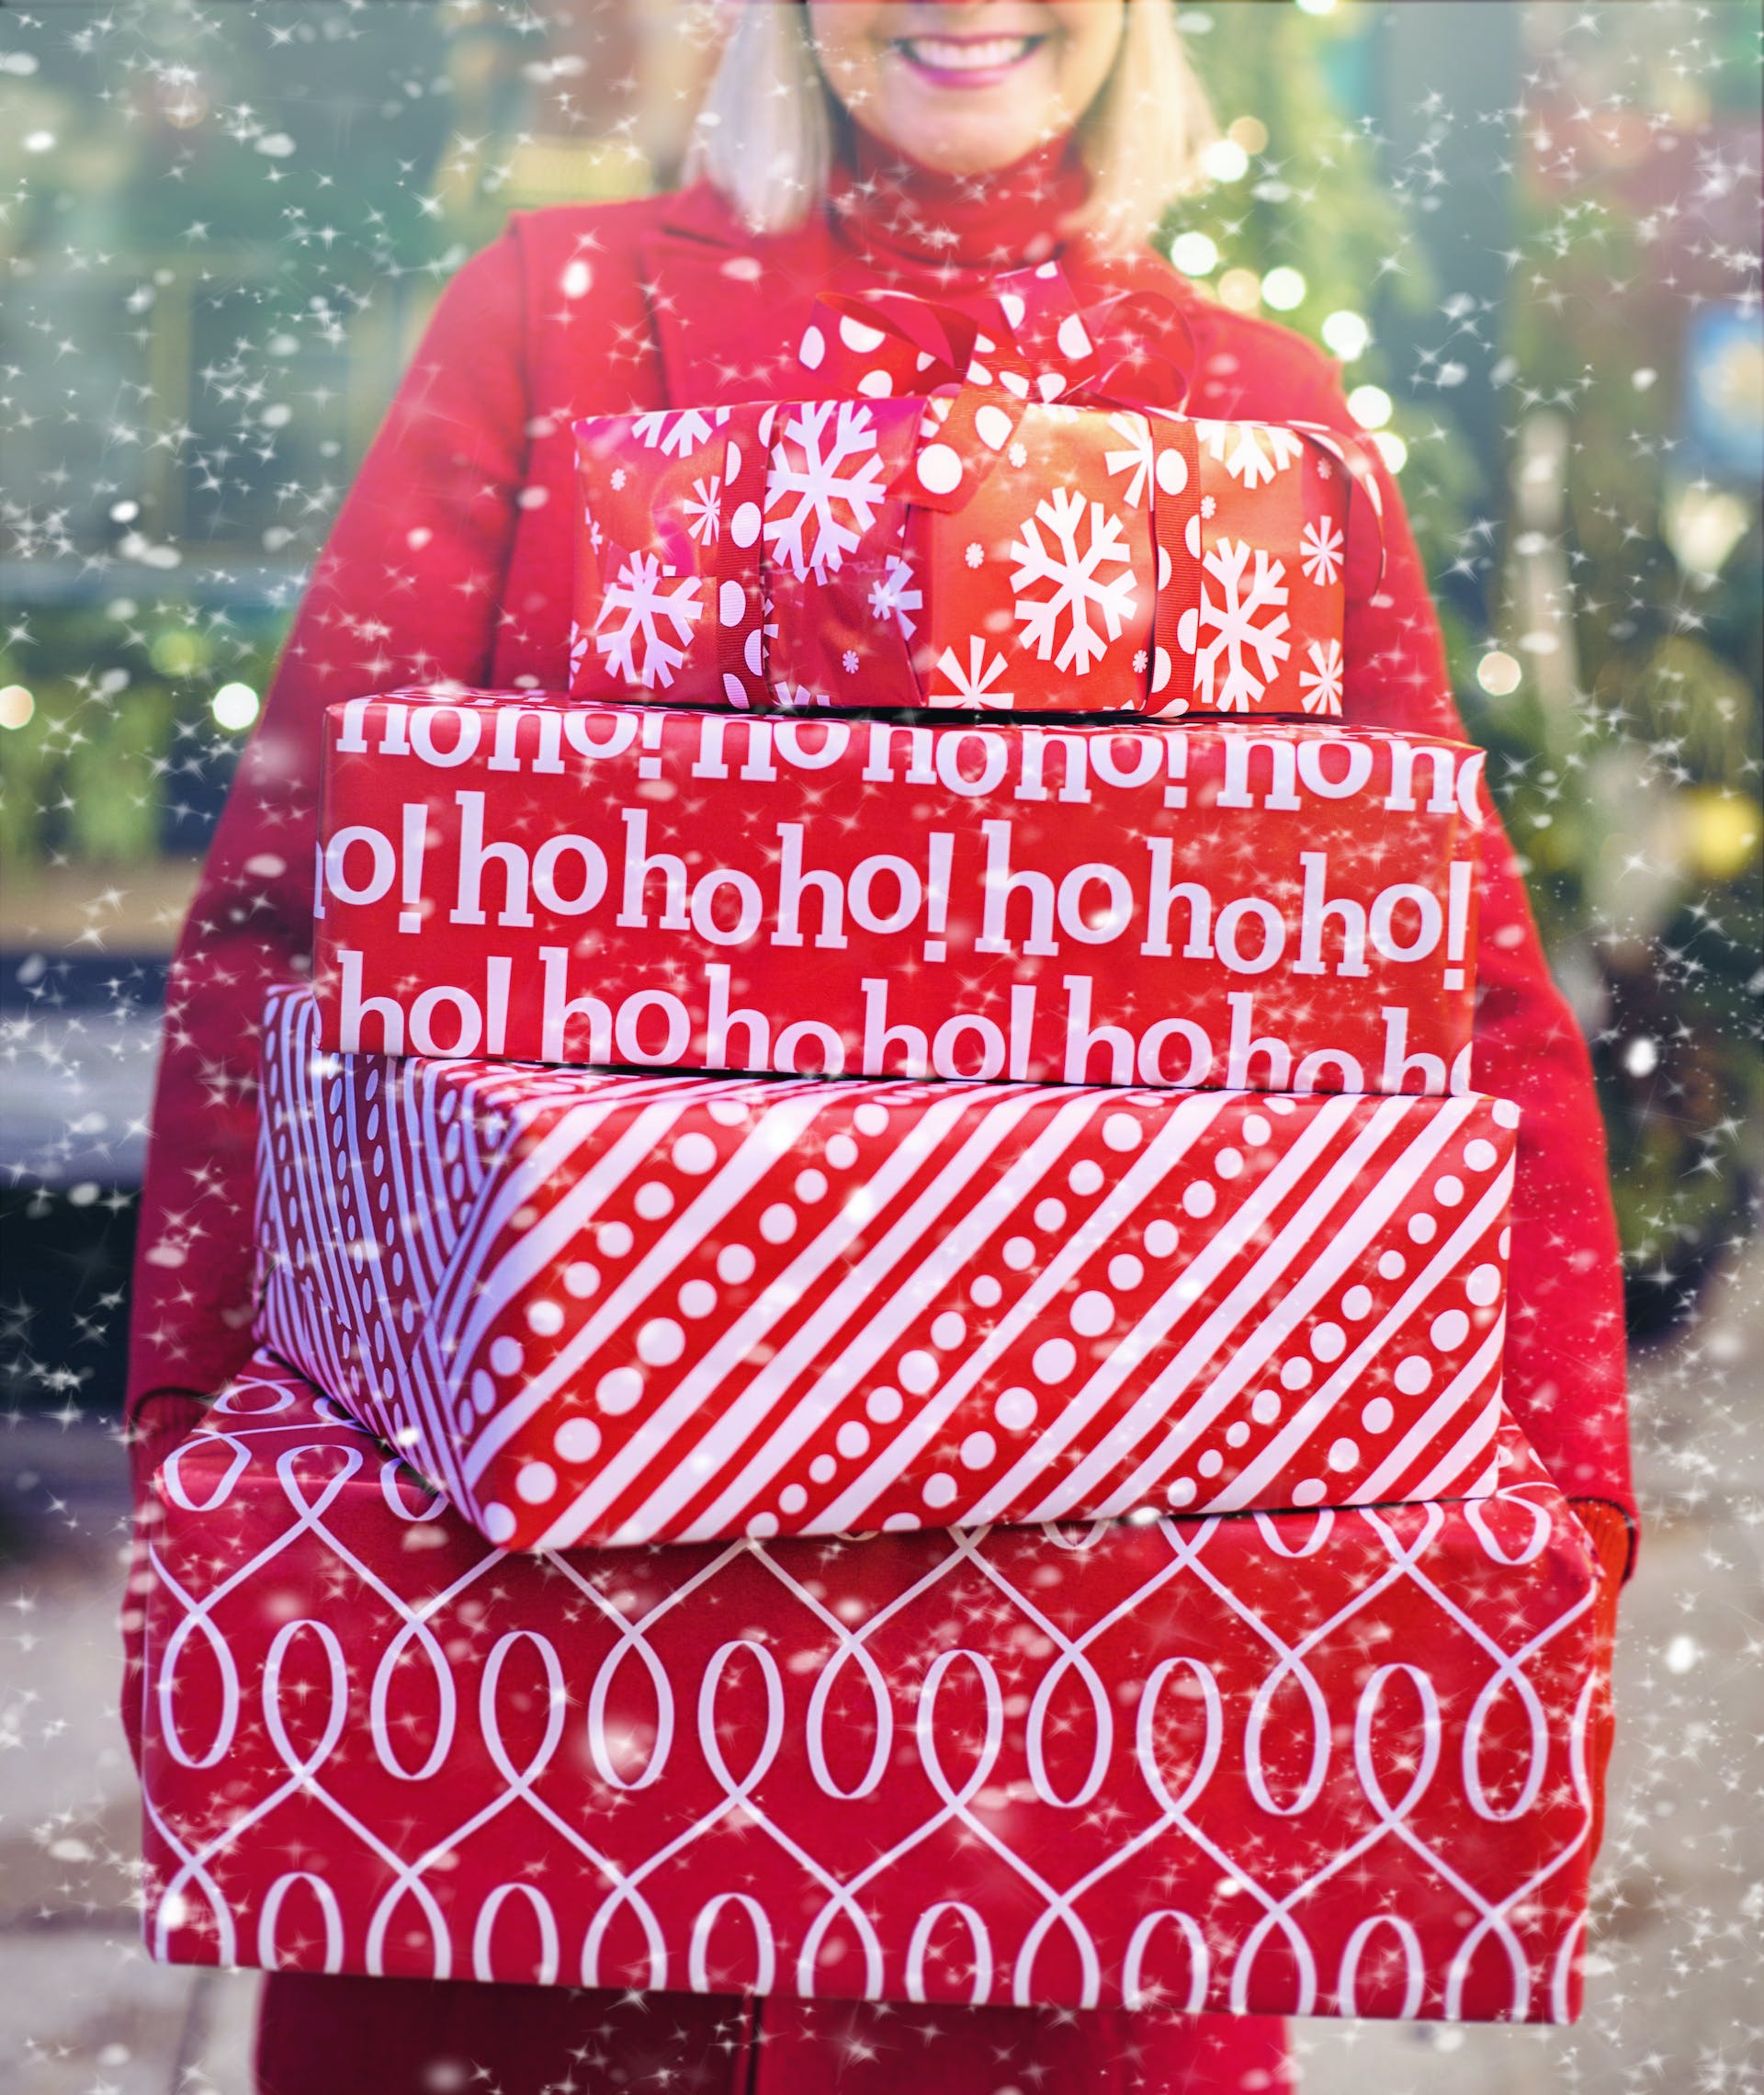 Eine Frau mit Weihnachtsgeschenken | Quelle: Pexels